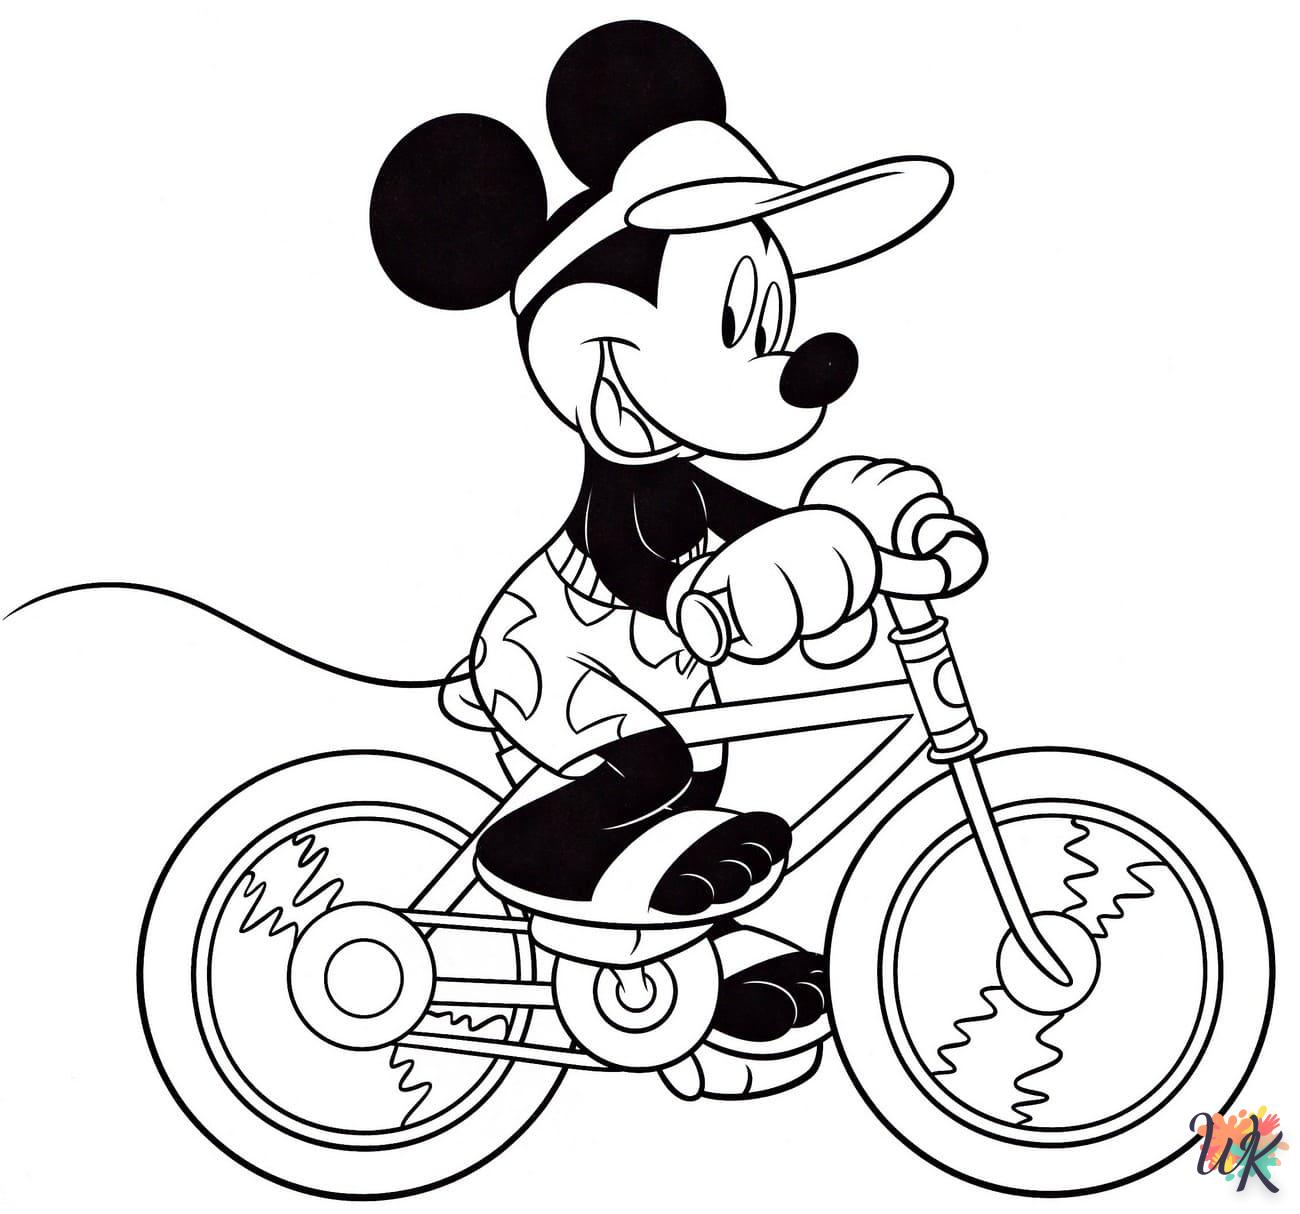 Dibujos para Colorear mickey mouse 88